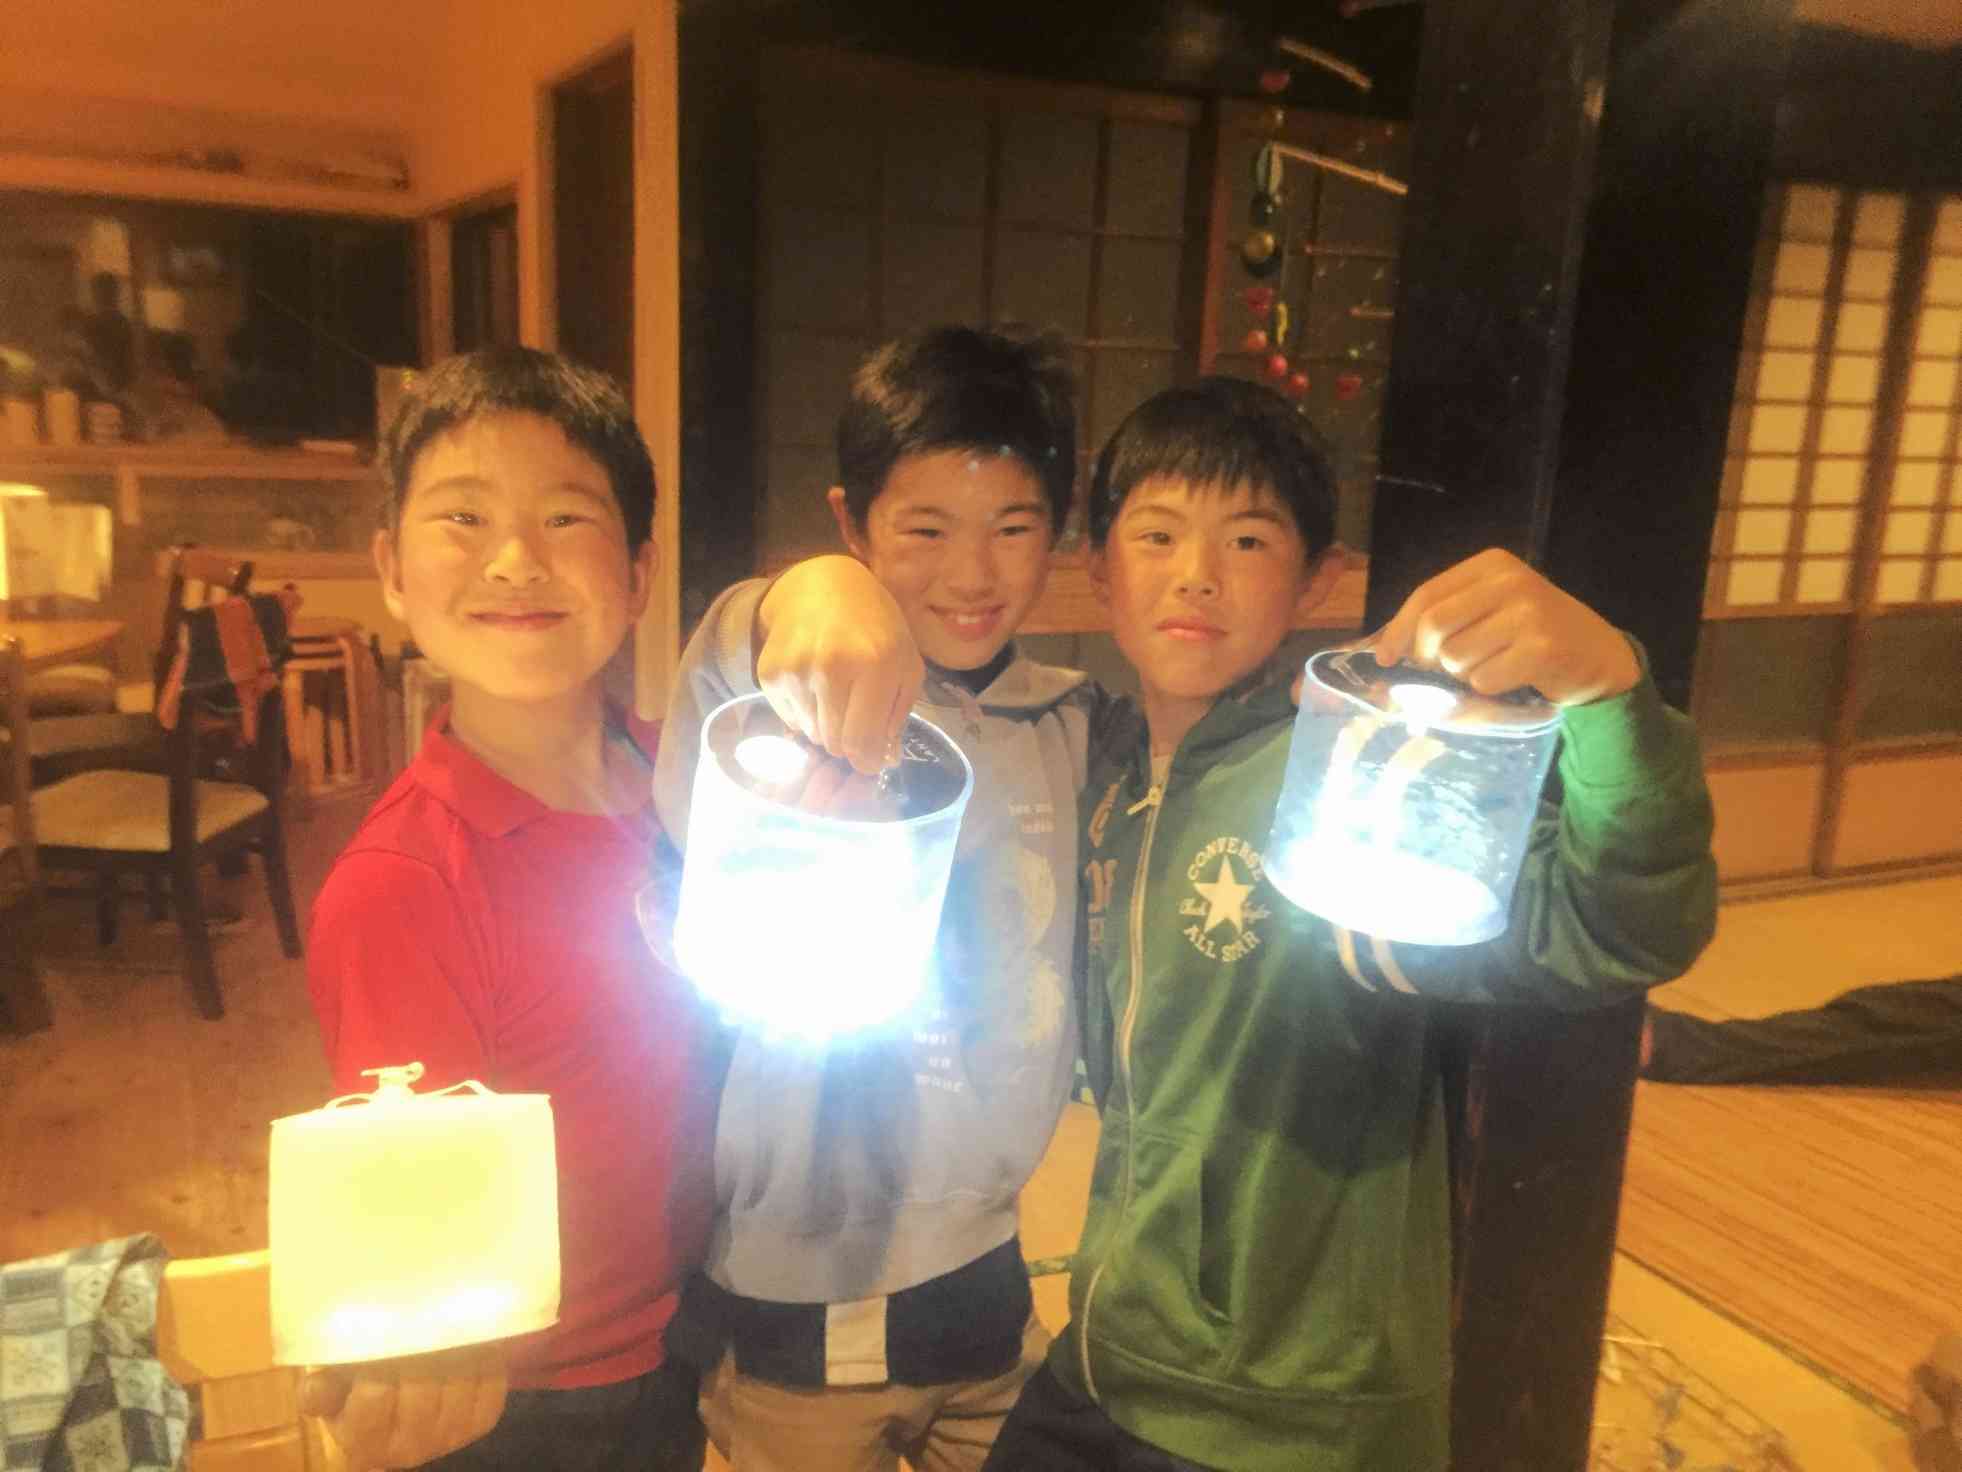 太陽光で充電できるソーラーランタンを持つ子供たち